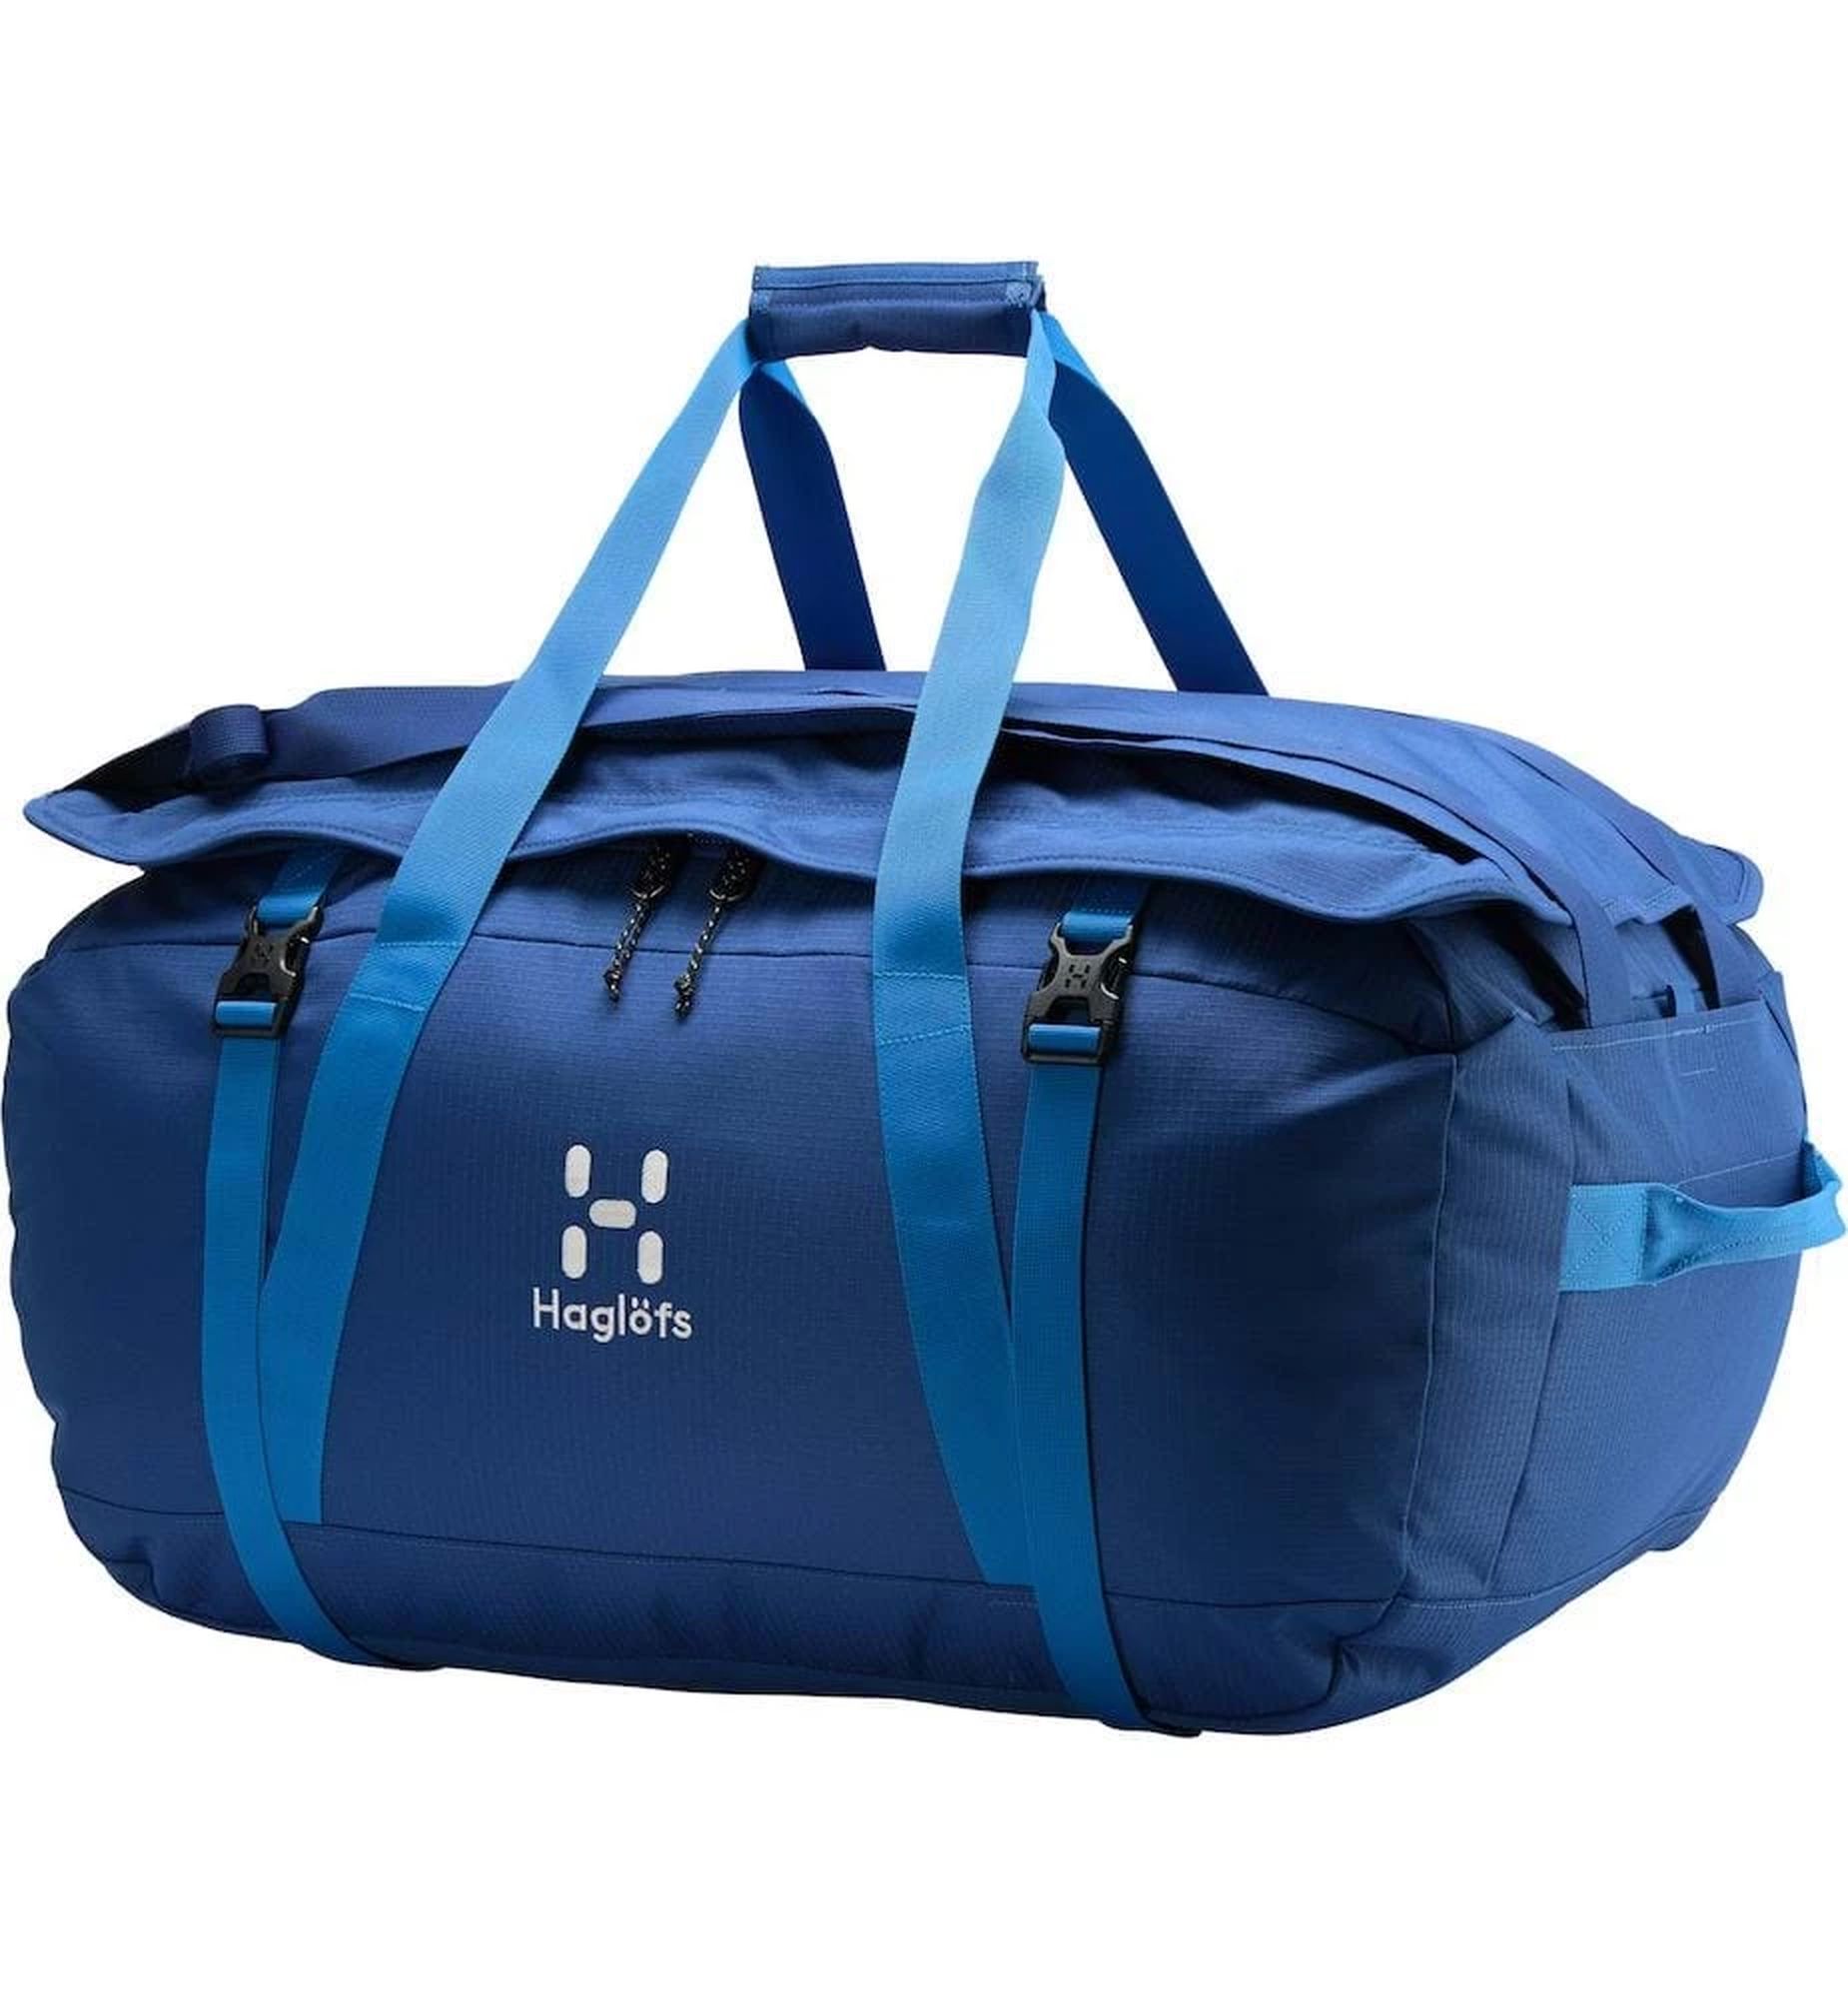 Haglöfs Cargo 90 - Hiking backpack | Hardloop